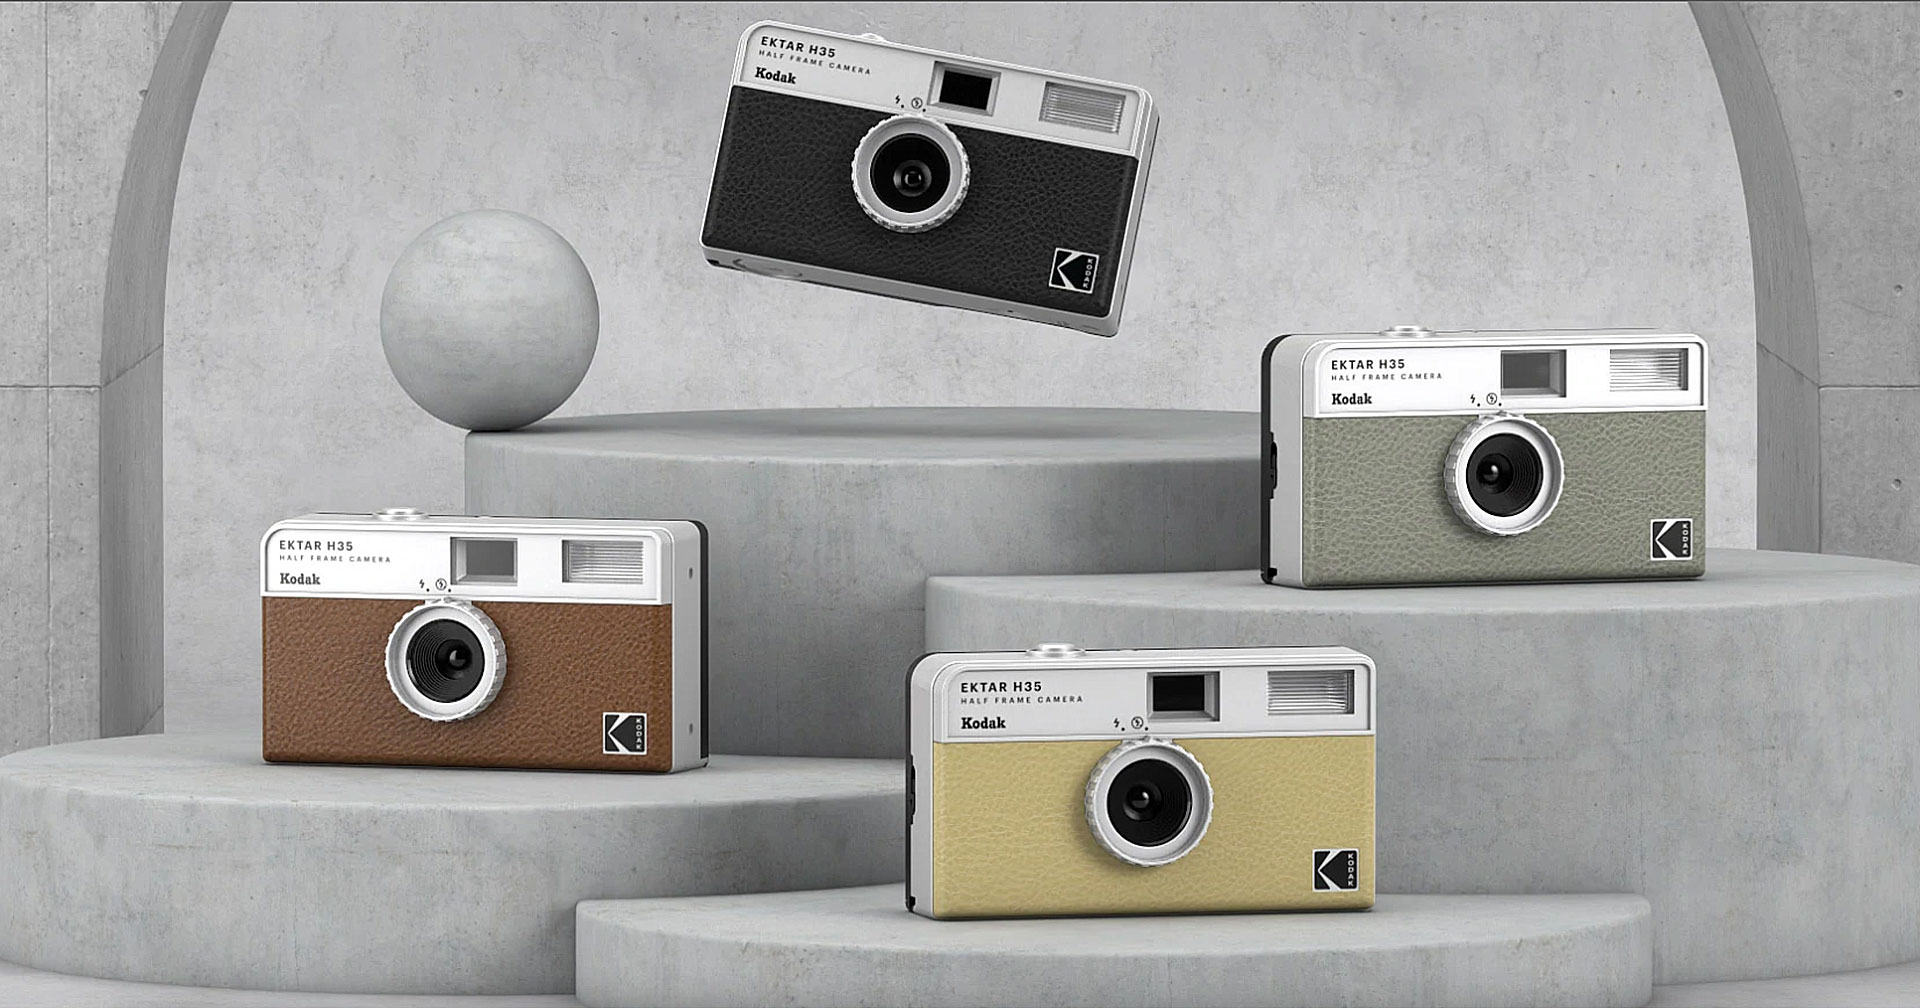 เปิดตัว Kodak Ektar H35 กล้องฟิล์ม half-frame สายวินเทจ ถ่ายสนุกคูณ 2